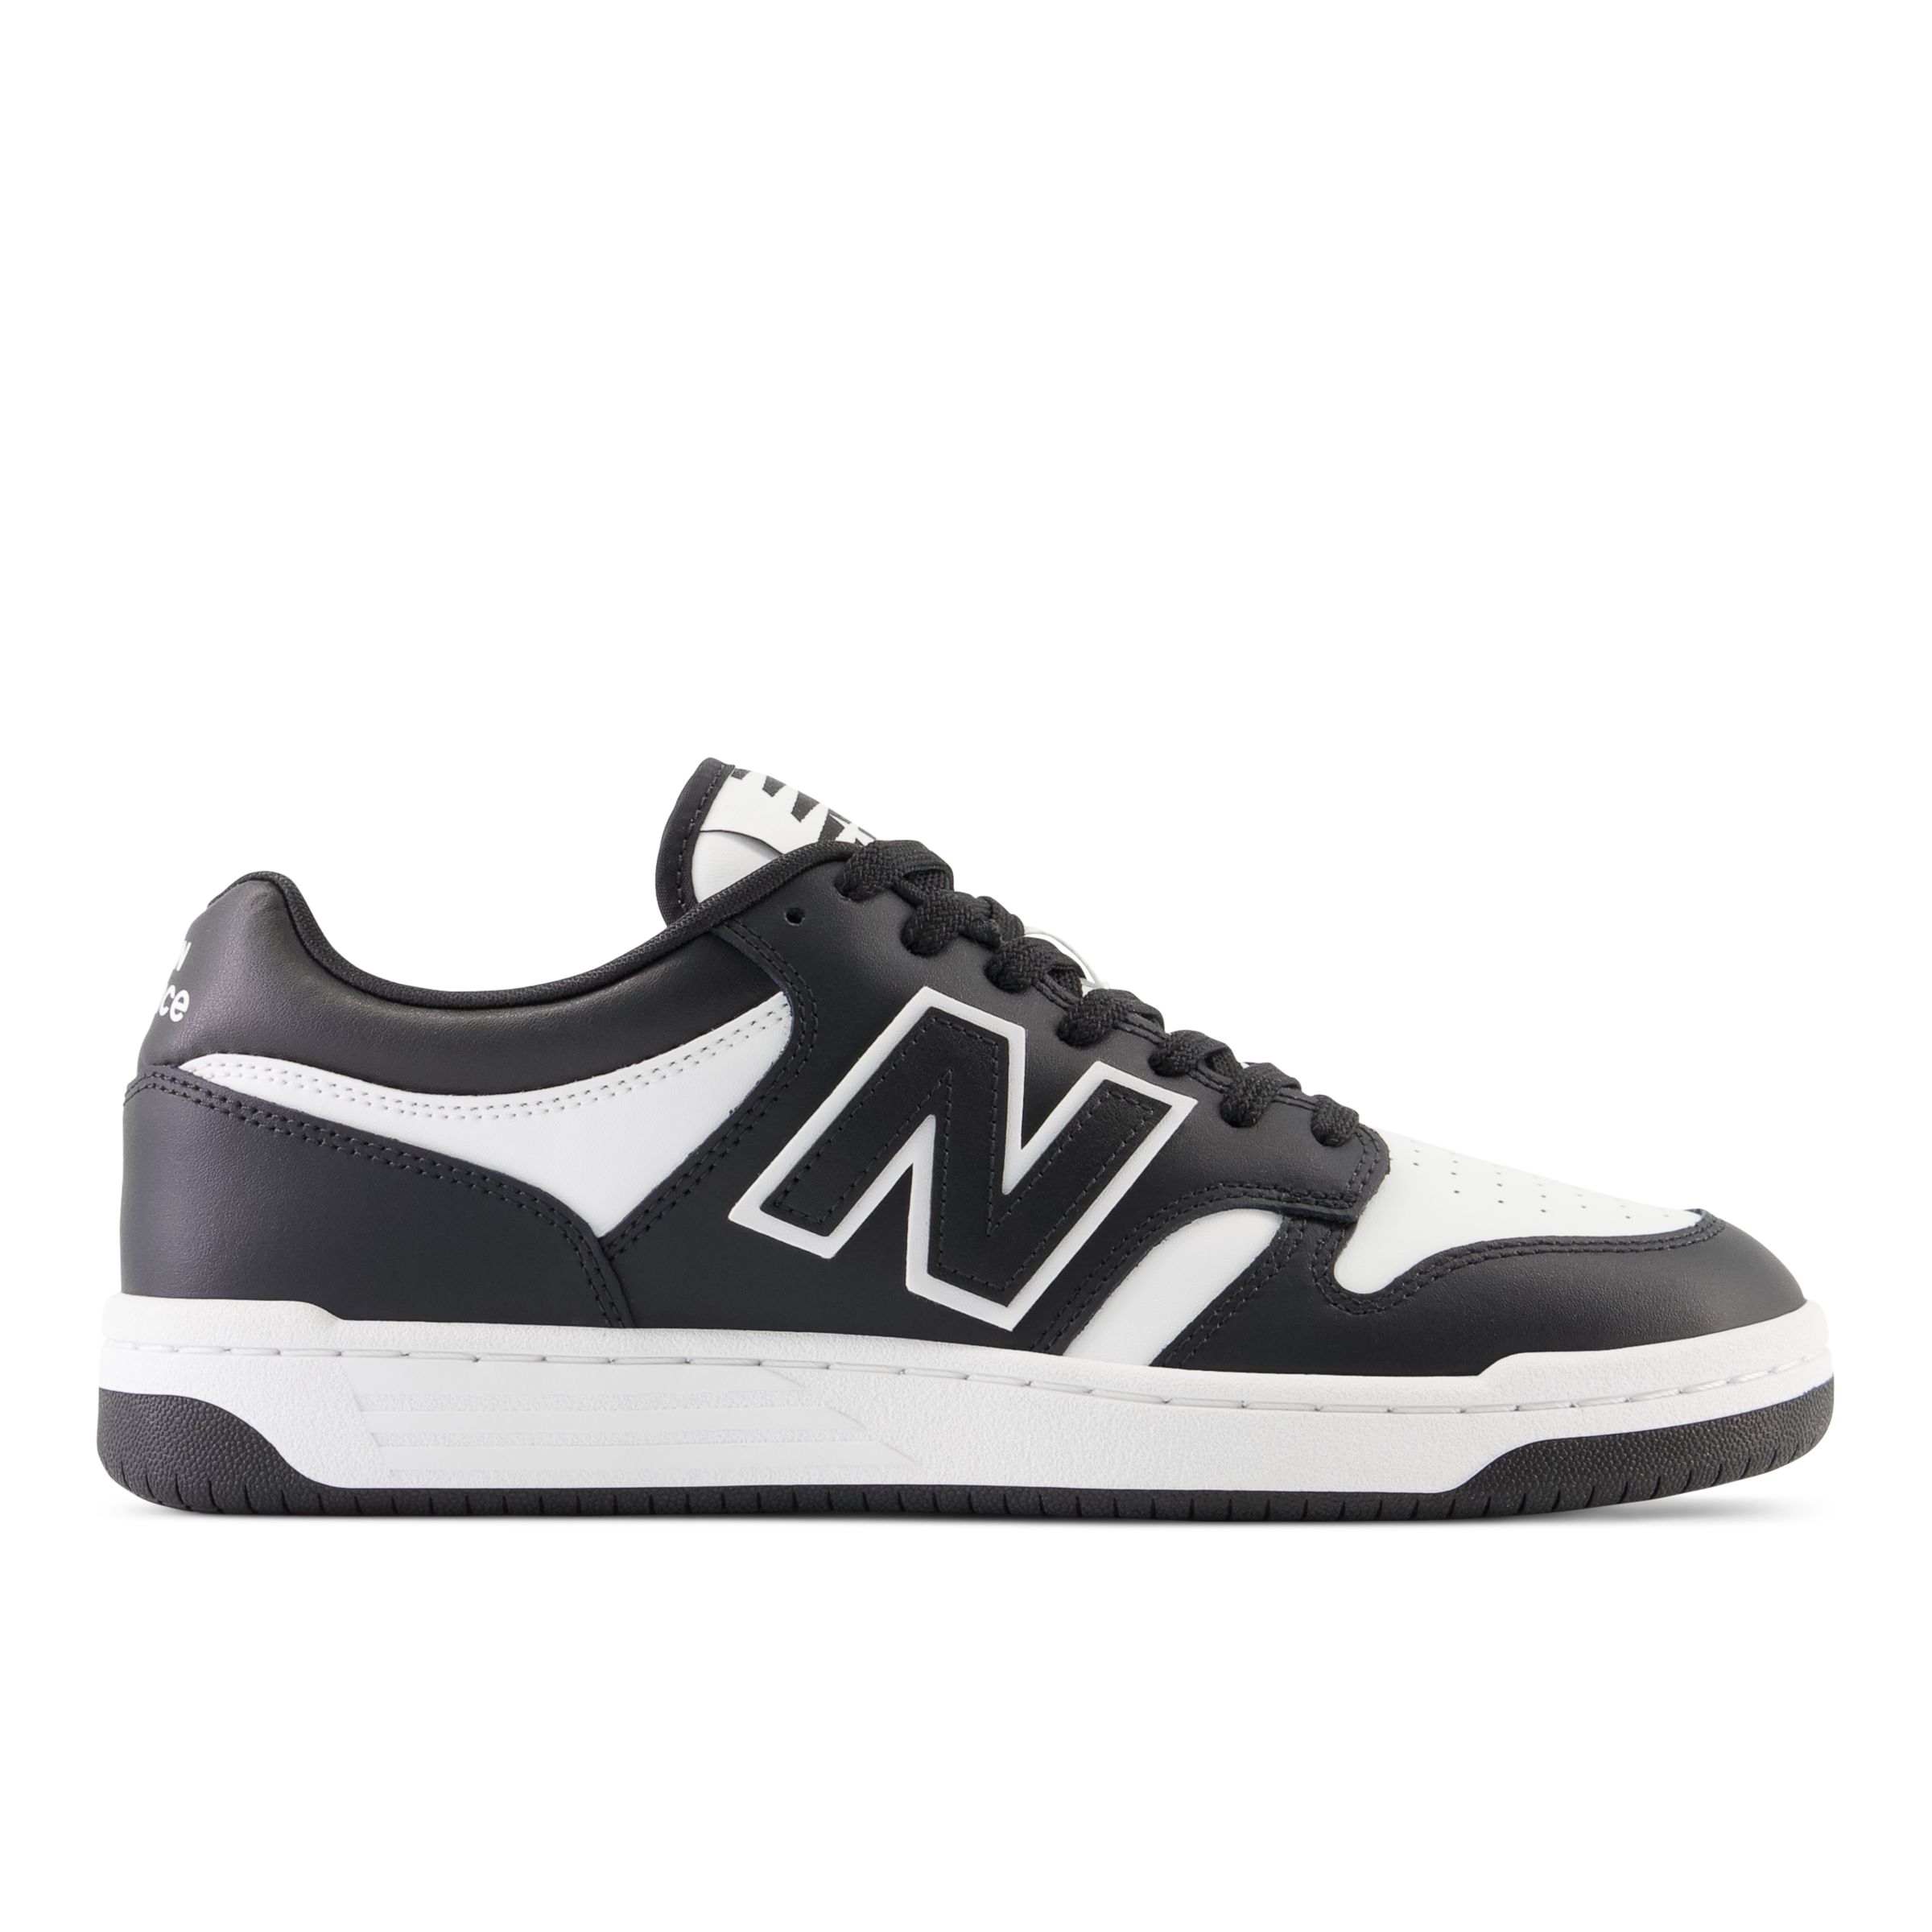 New Balance Herren 480 in Schwarz/Weiß, Leather, Größe 43